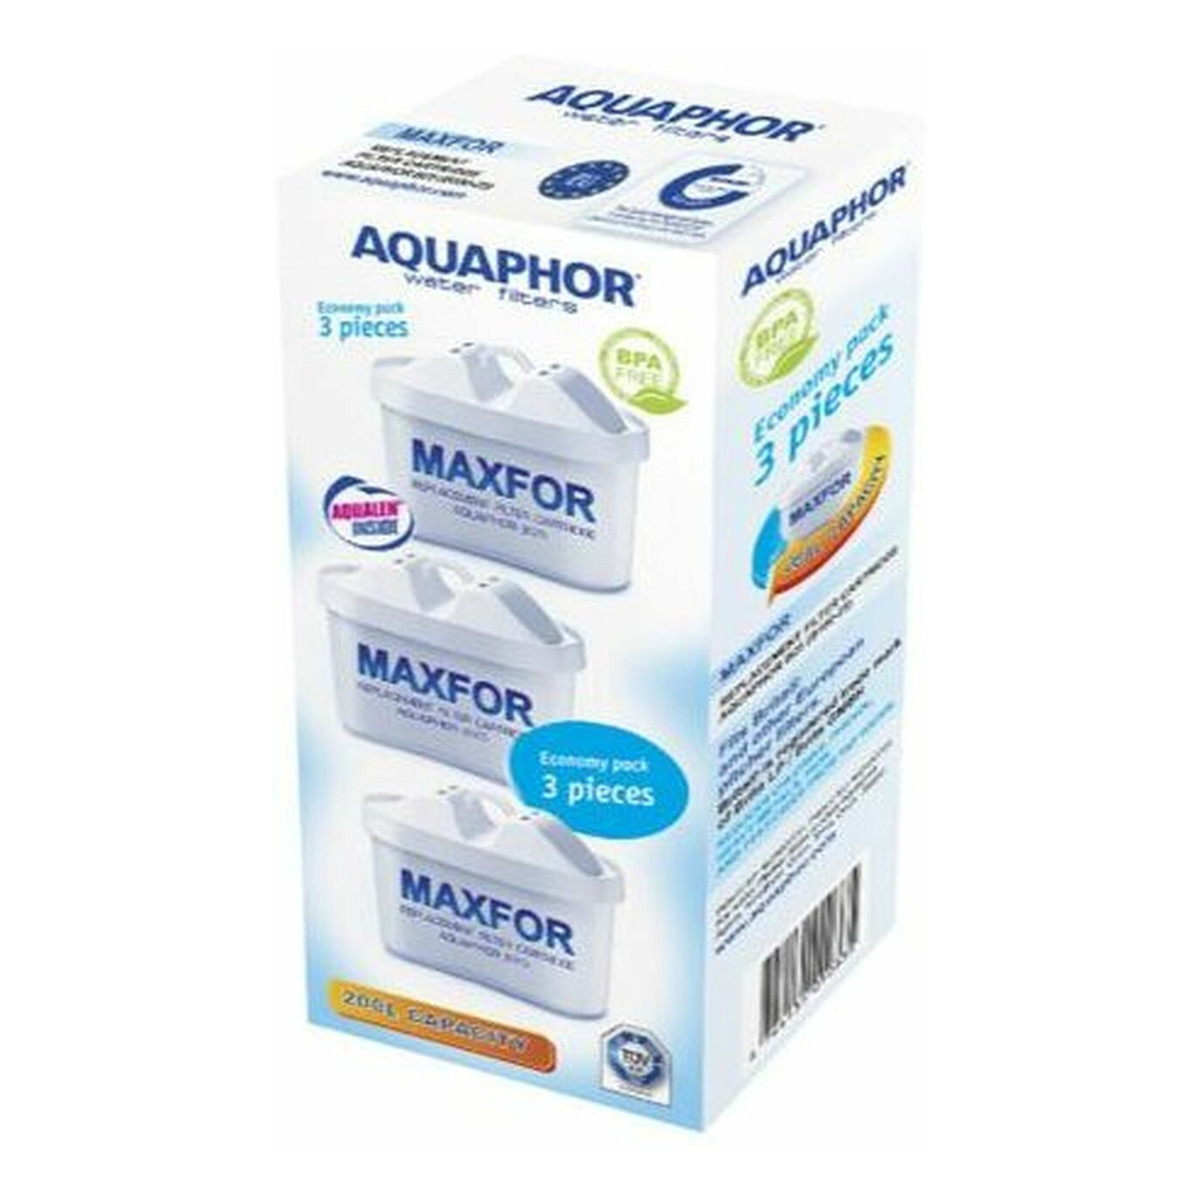 Aquaphor WKŁAD filtrujący DO DZBANKA B25 MAXFOR WYDAJNOŚĆ 200L 3 sztuki